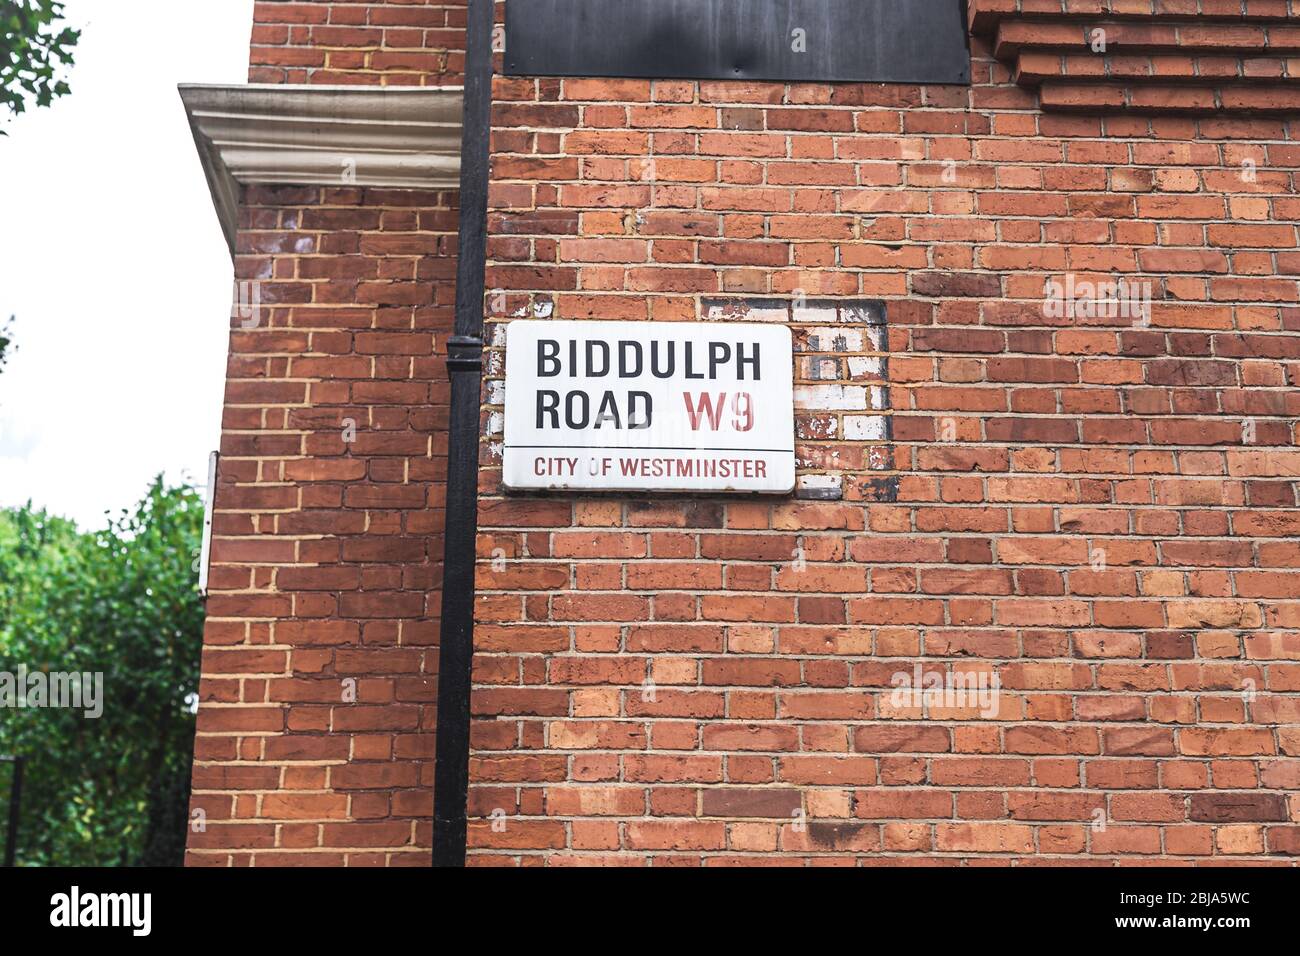 Londra/UK-30/07/18 Biddulph Road nome segno, Maida vale. La zona è nota per i suoi ampi viali alberati, grandi giardini comuni e palazzo in mattoni rossi Foto Stock